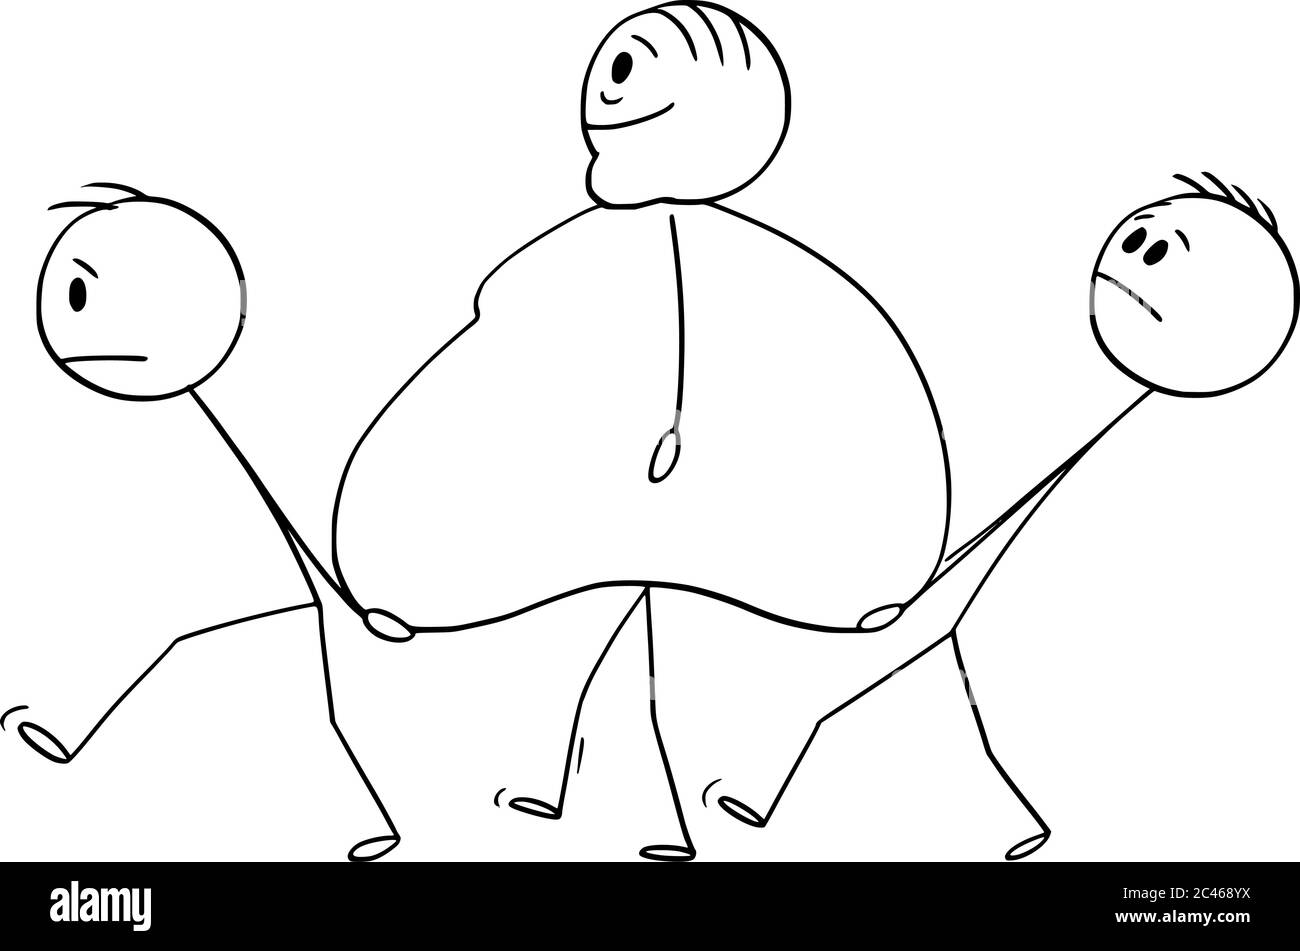 Vecteur dessin dessin dessin dessin dessin dessin conceptuel illustration d'homme obèse, en surpoids ou gras marchant avec deux hommes portant son ventre. Illustration de Vecteur